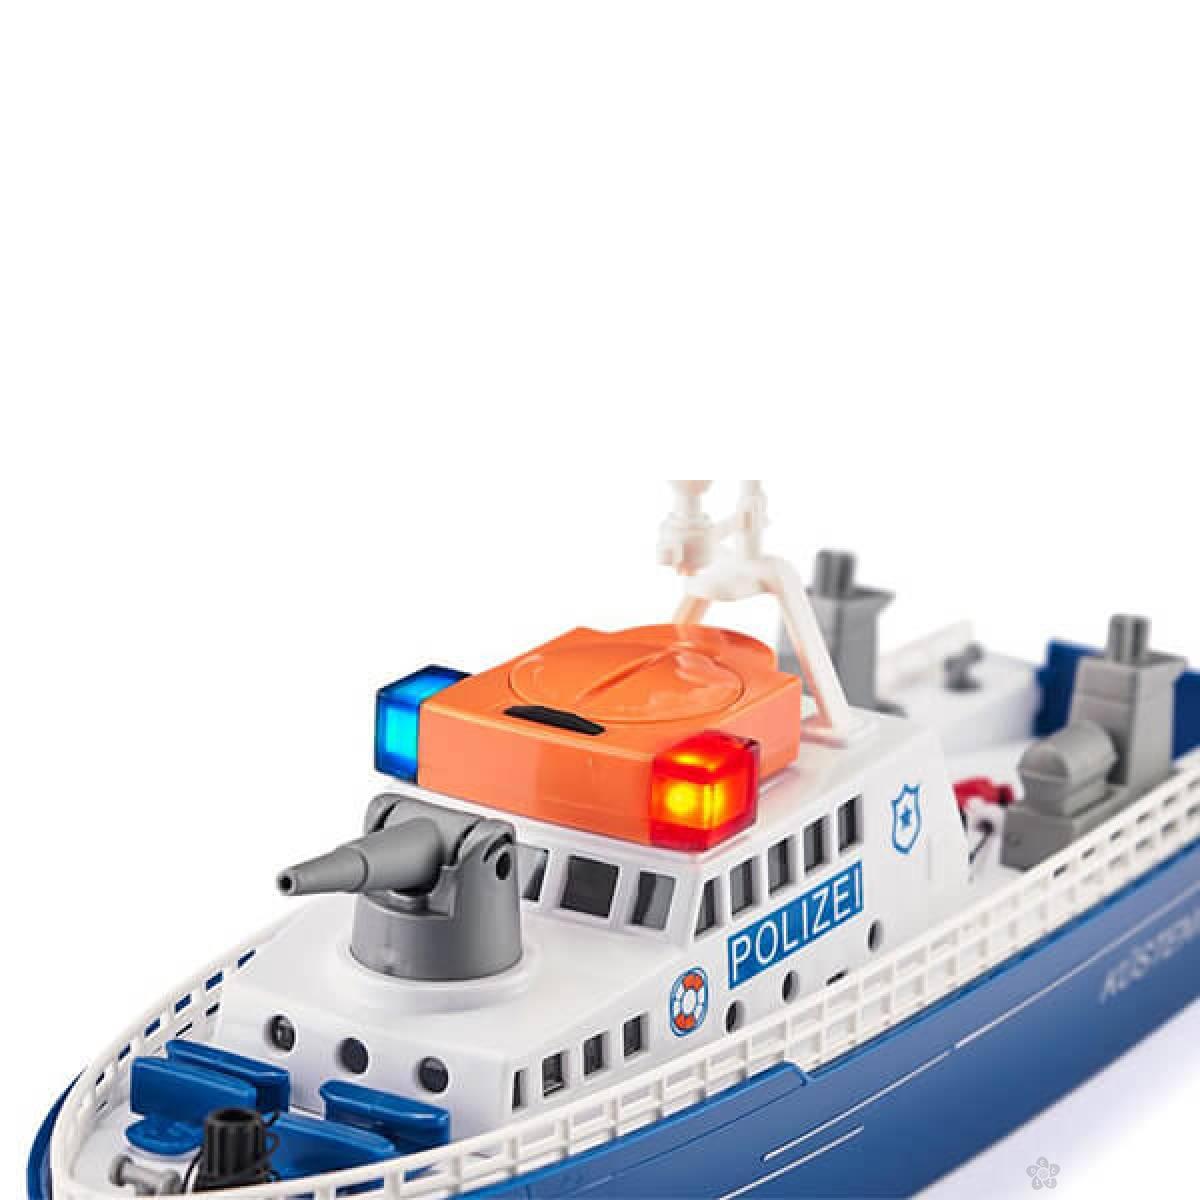 Policijski brod 5401 